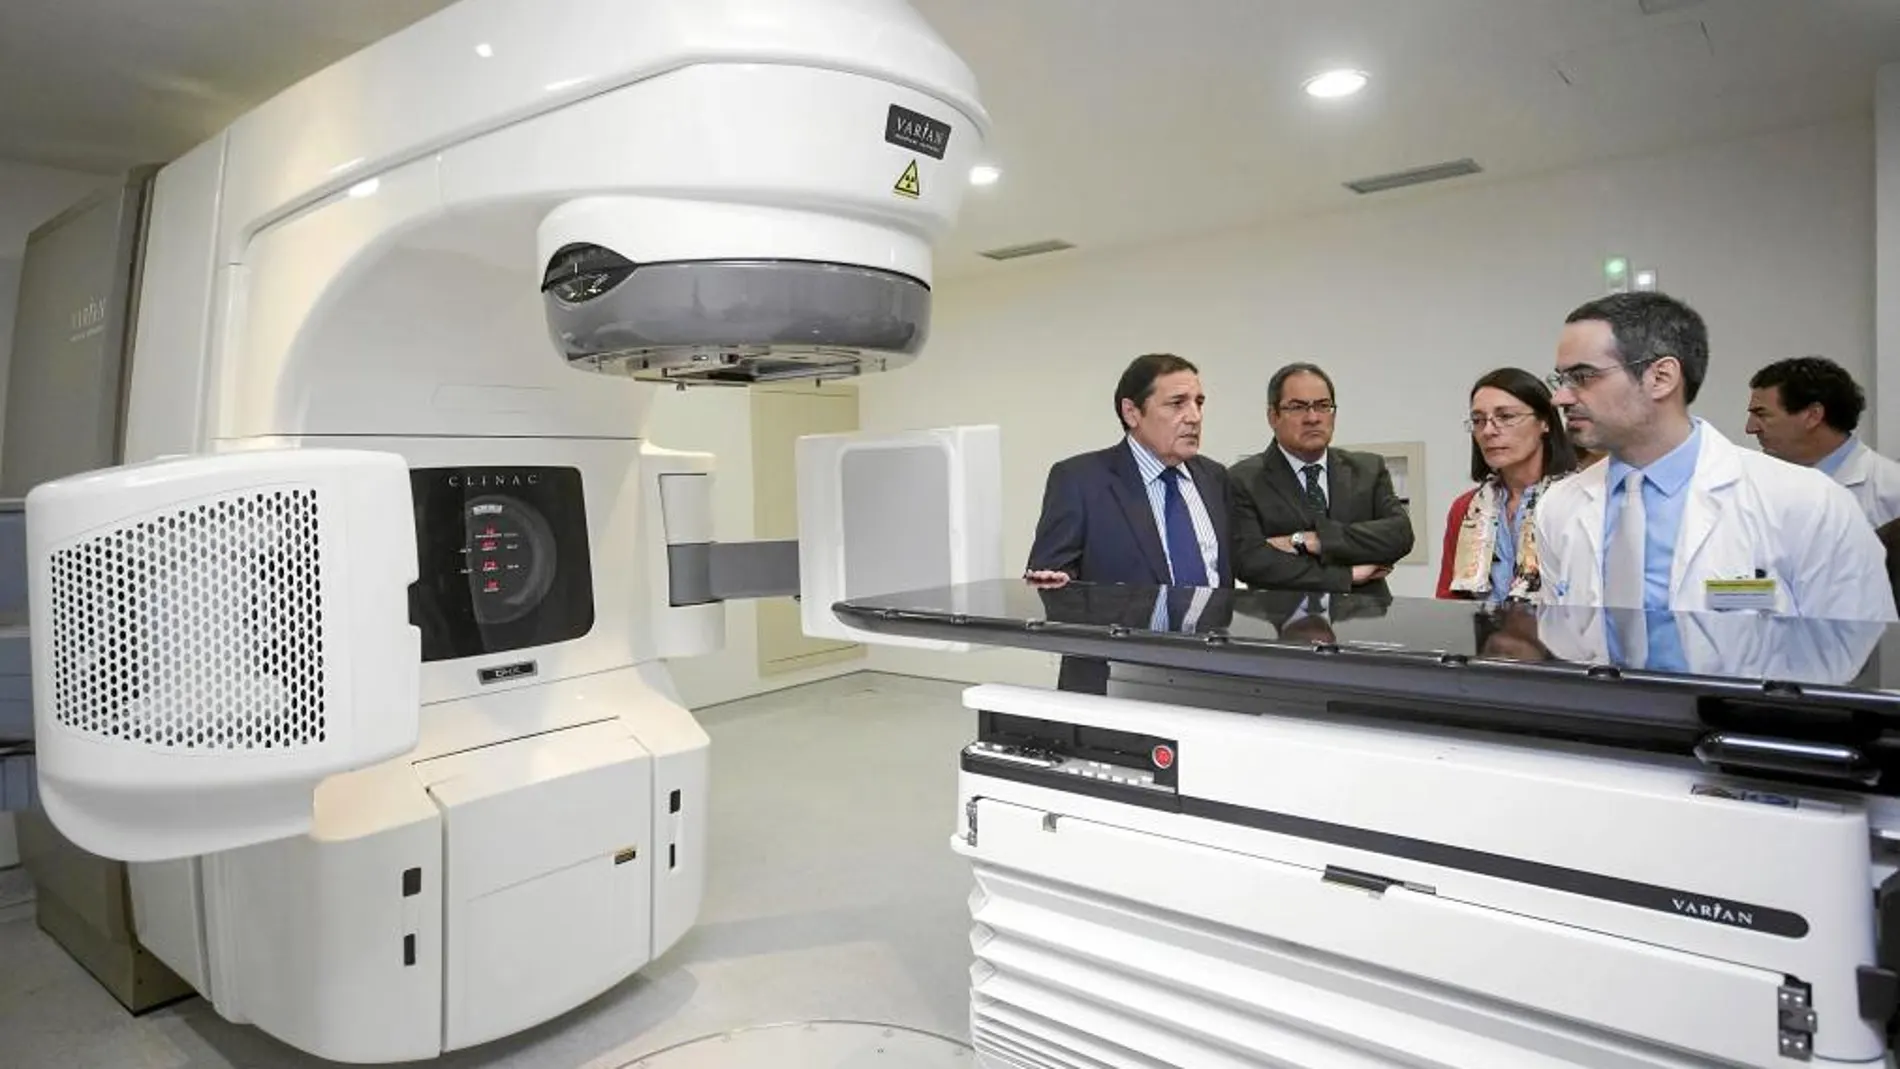 El consejero de Sanidad, Antonio María Sáez Aguado, visita el Hospital de Burgos